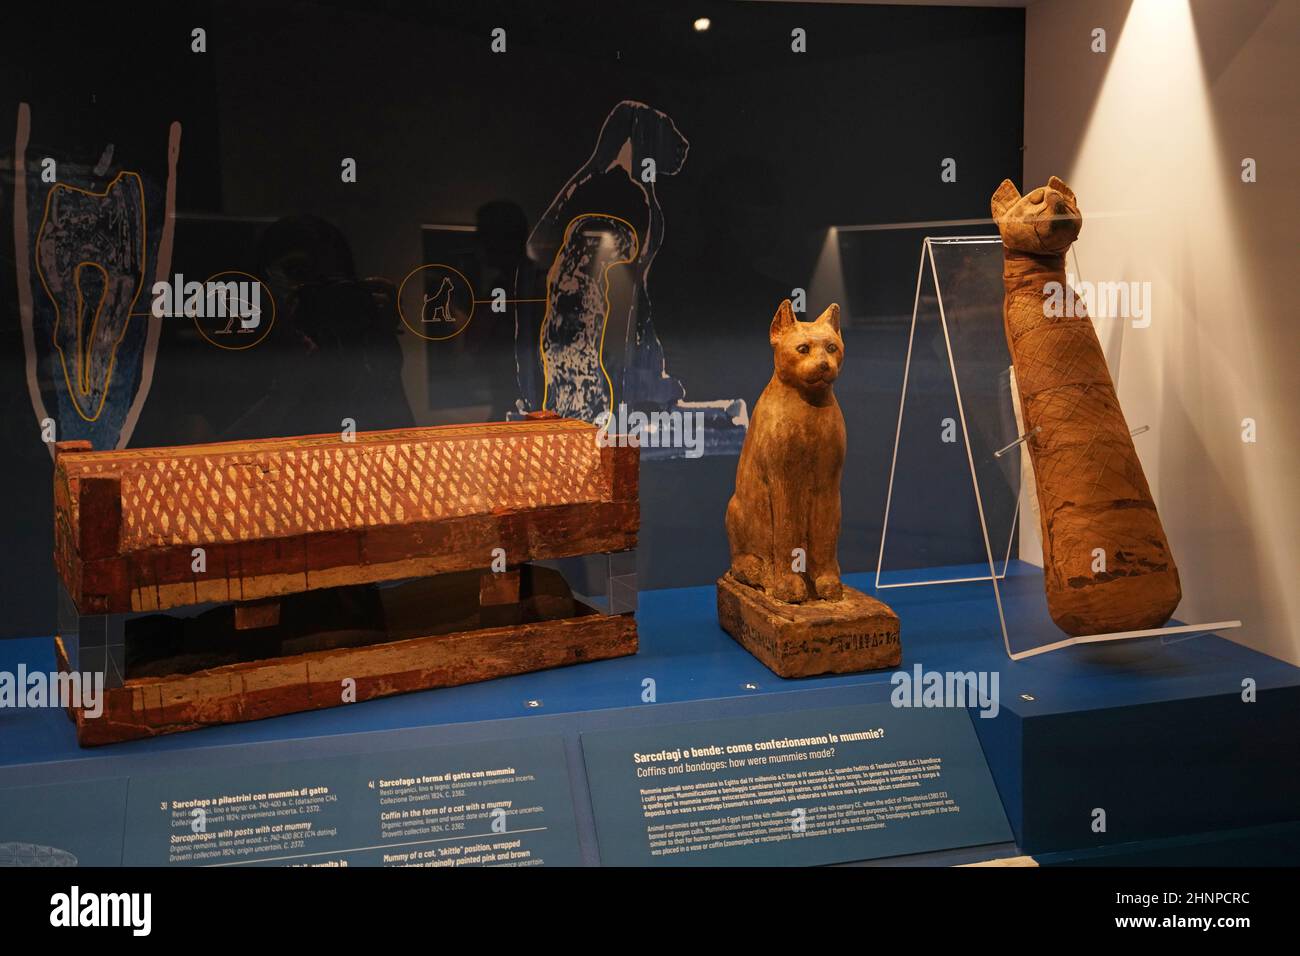 TURIN, ITALIEN - 19. AUGUST 2021: Katzenmumie. Mumifizierung der Katze während der ägyptischen Zivilisation, Ägyptisches Museum von Turin, Italien Stockfoto